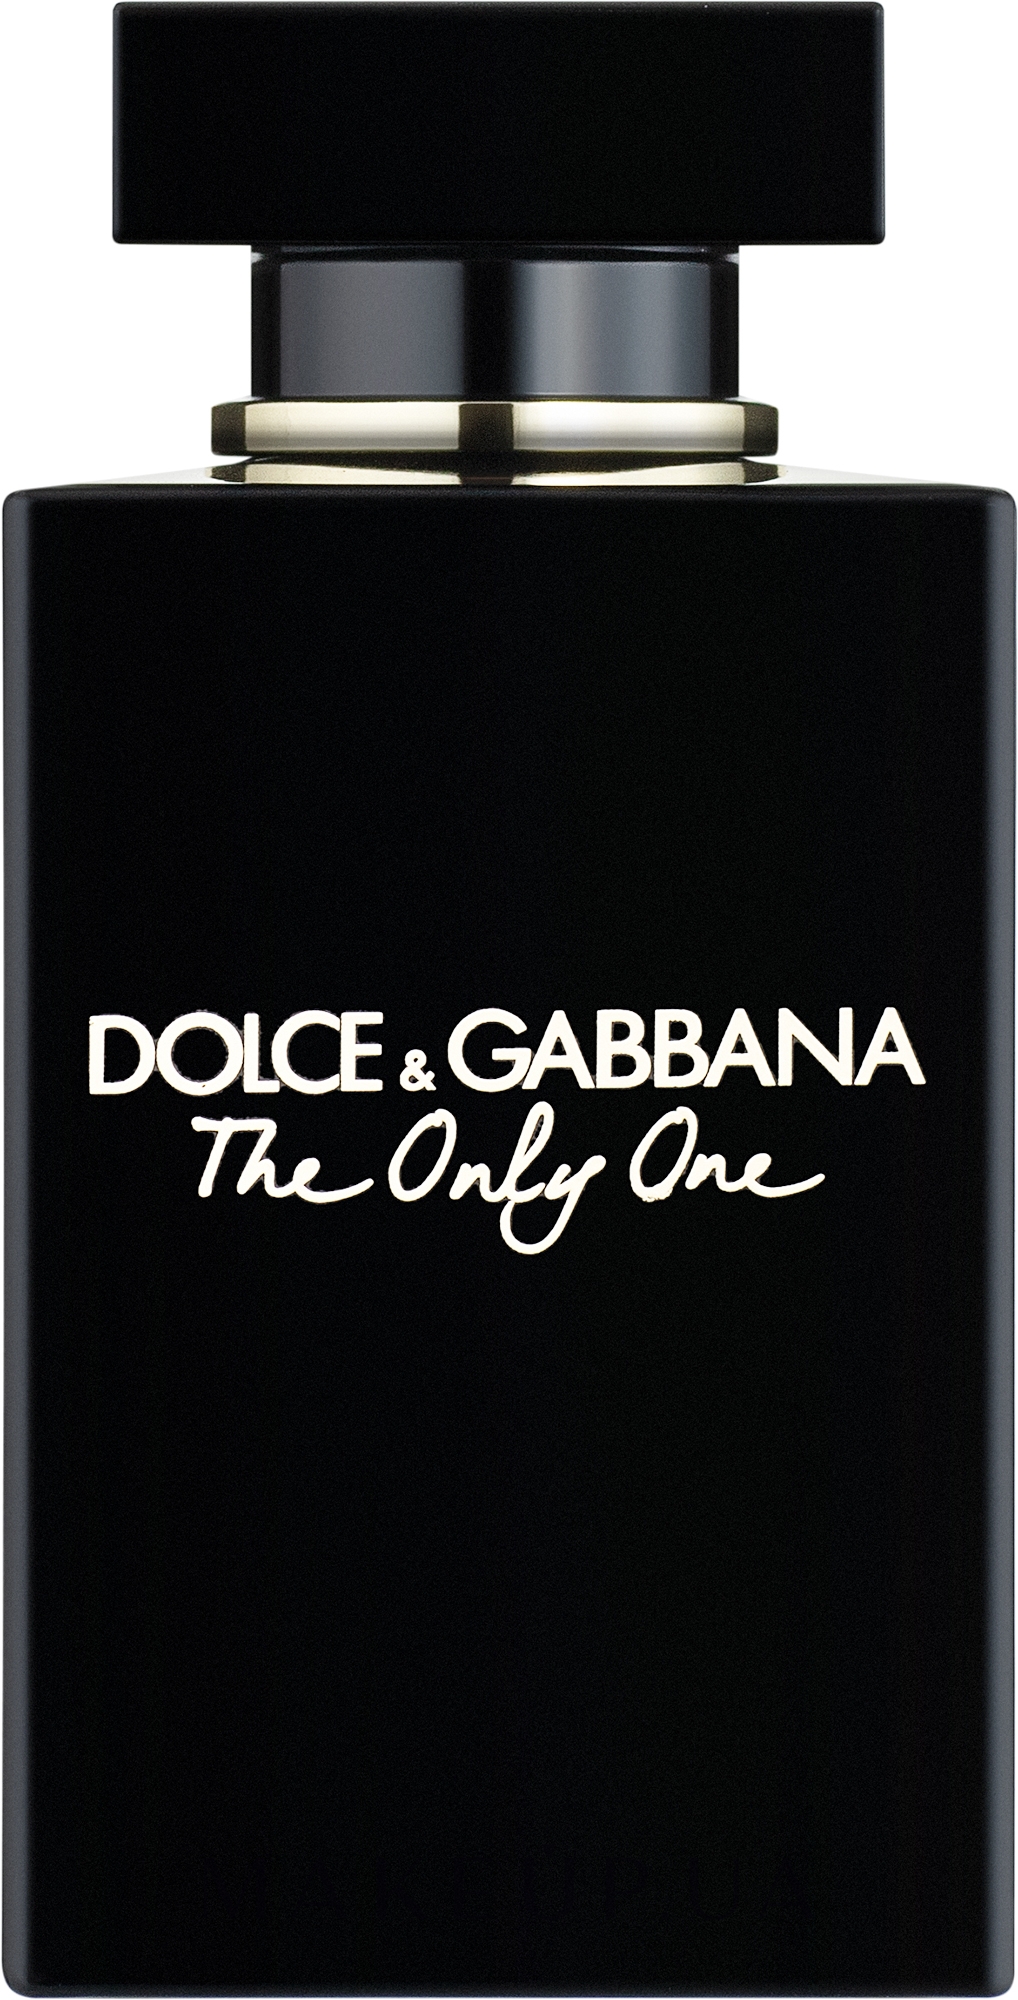 Дольче габбана черные духи. Dolce & Gabbana the only one, EDP., 100 ml. Dolce Gabbana the only one 30 мл. Туалетная вода Дольче Габбана the only one. Dolce Gabbana the only one Eau de Parfum.